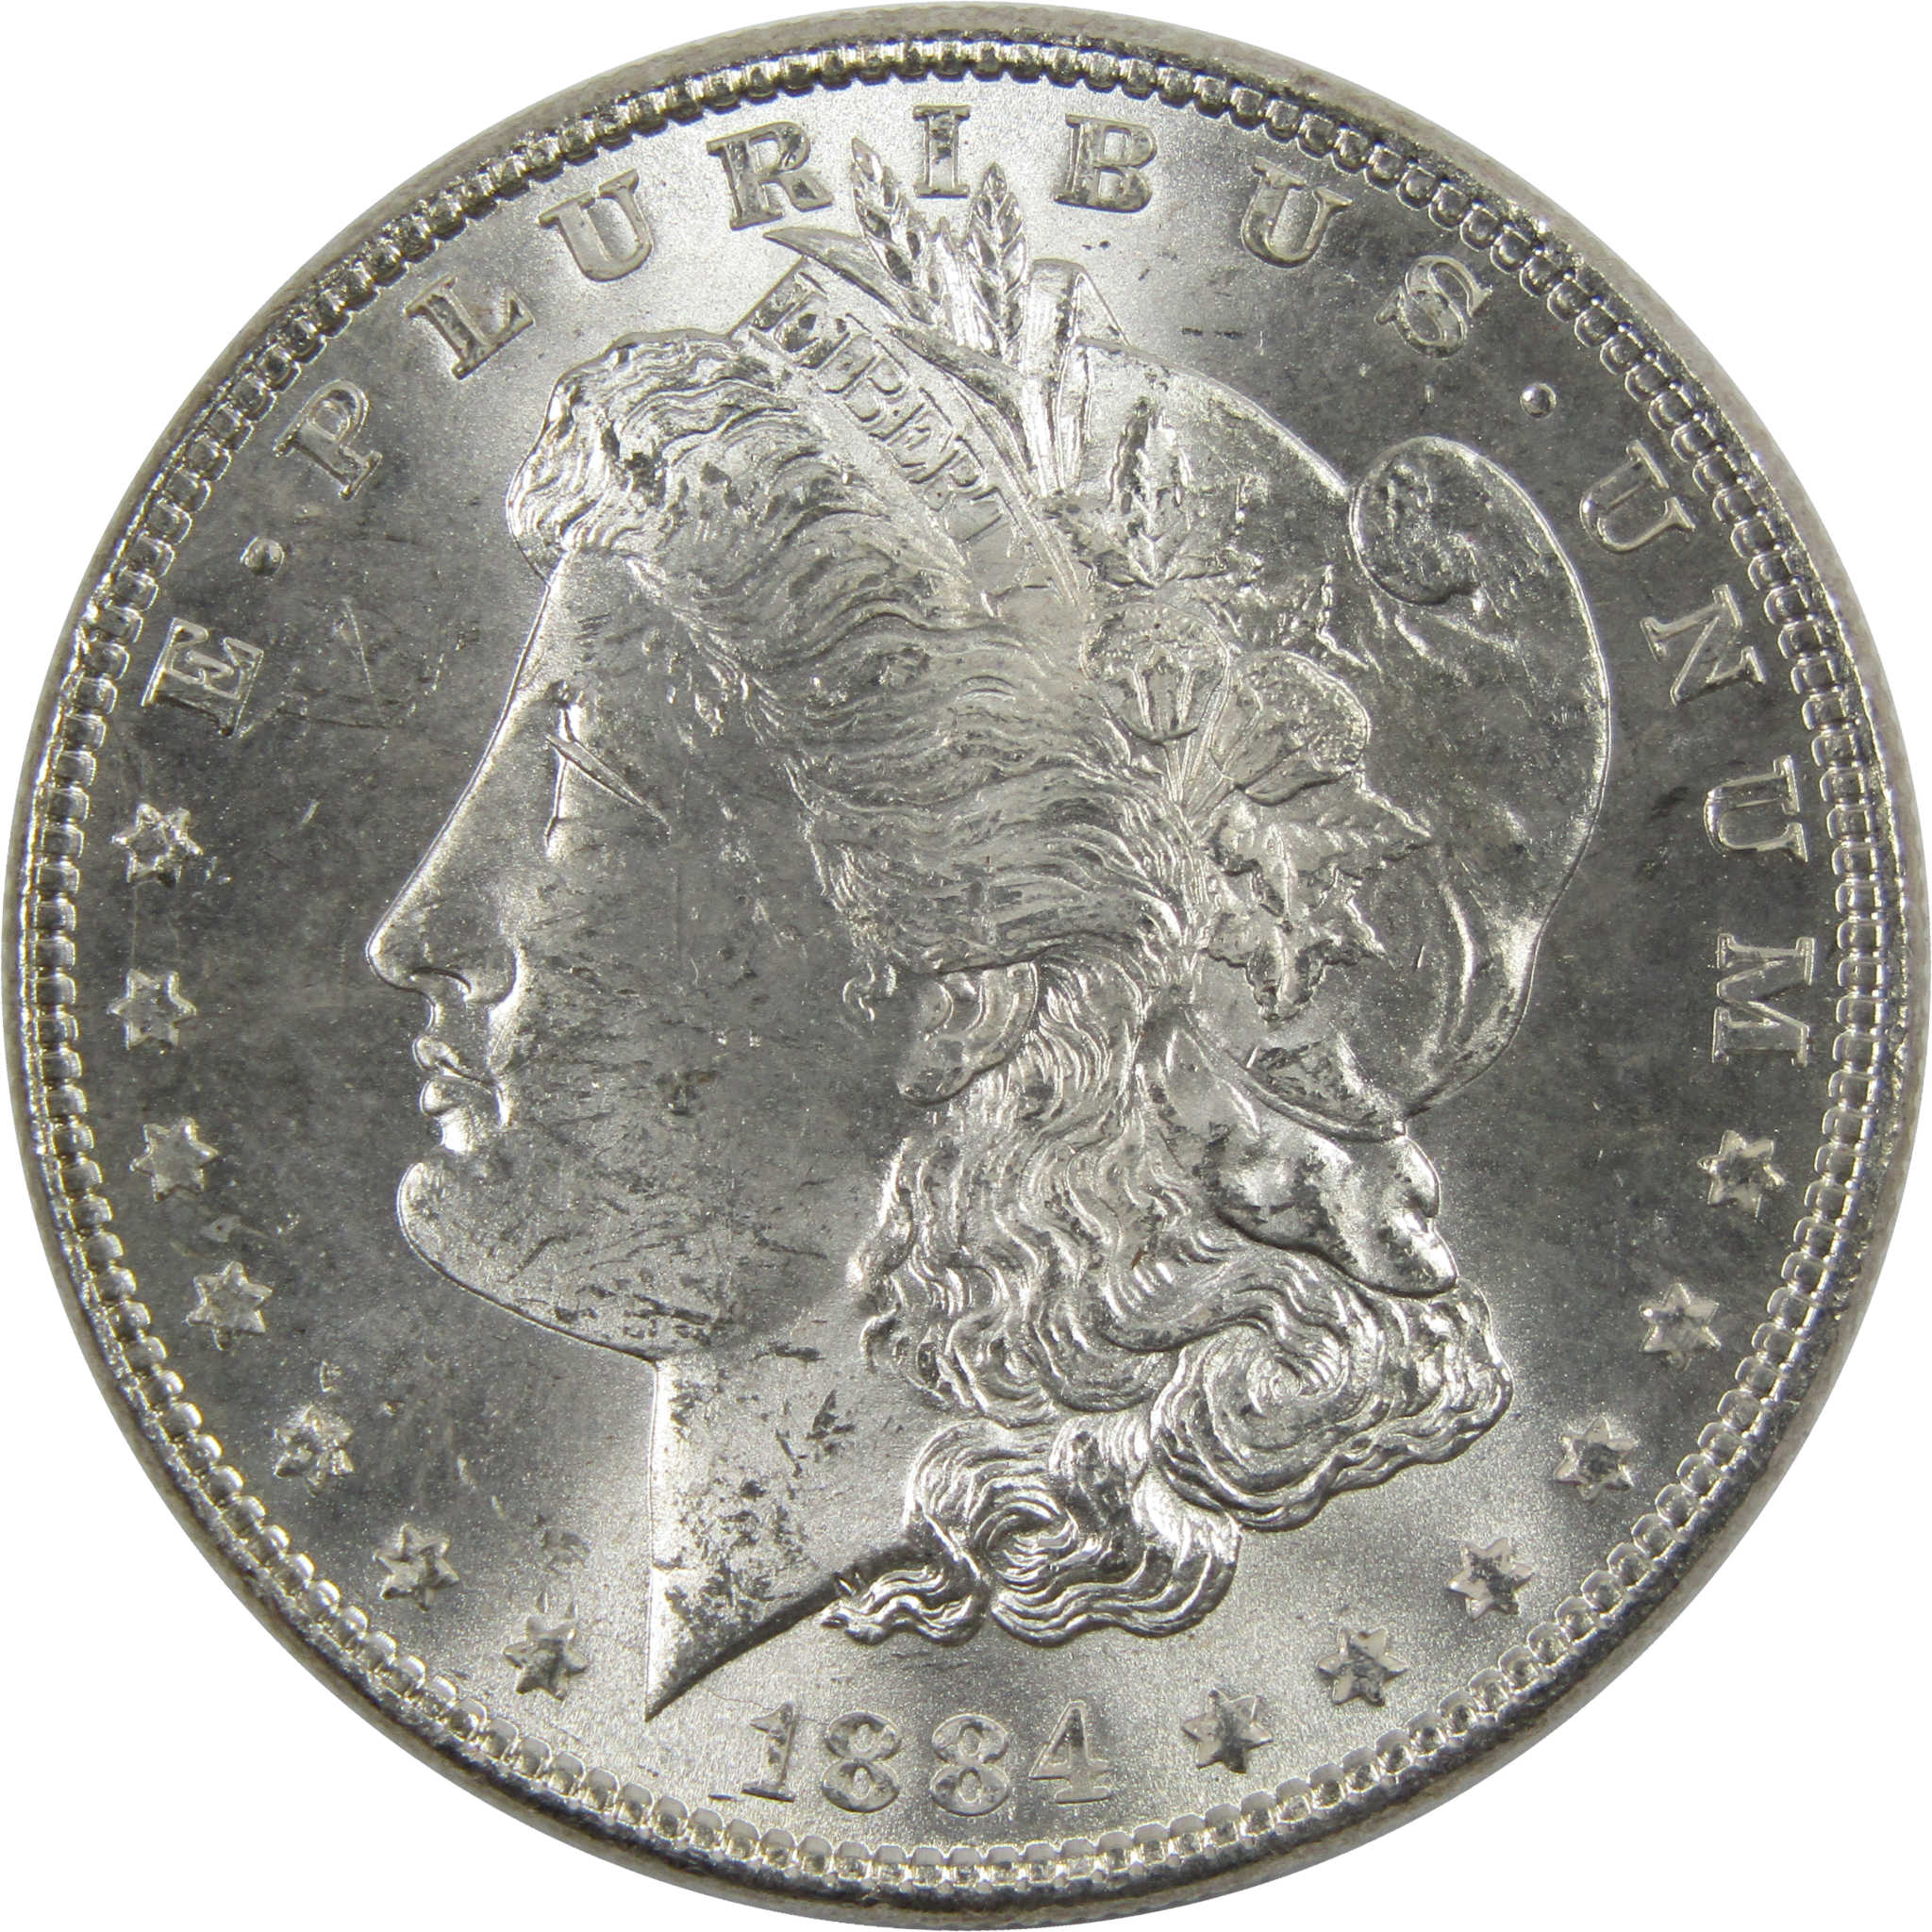 1884 Morgan Dollar BU Uncirculated 90% Silver $1 Coin SKU:I6010 - Morgan coin - Morgan silver dollar - Morgan silver dollar for sale - Profile Coins &amp; Collectibles